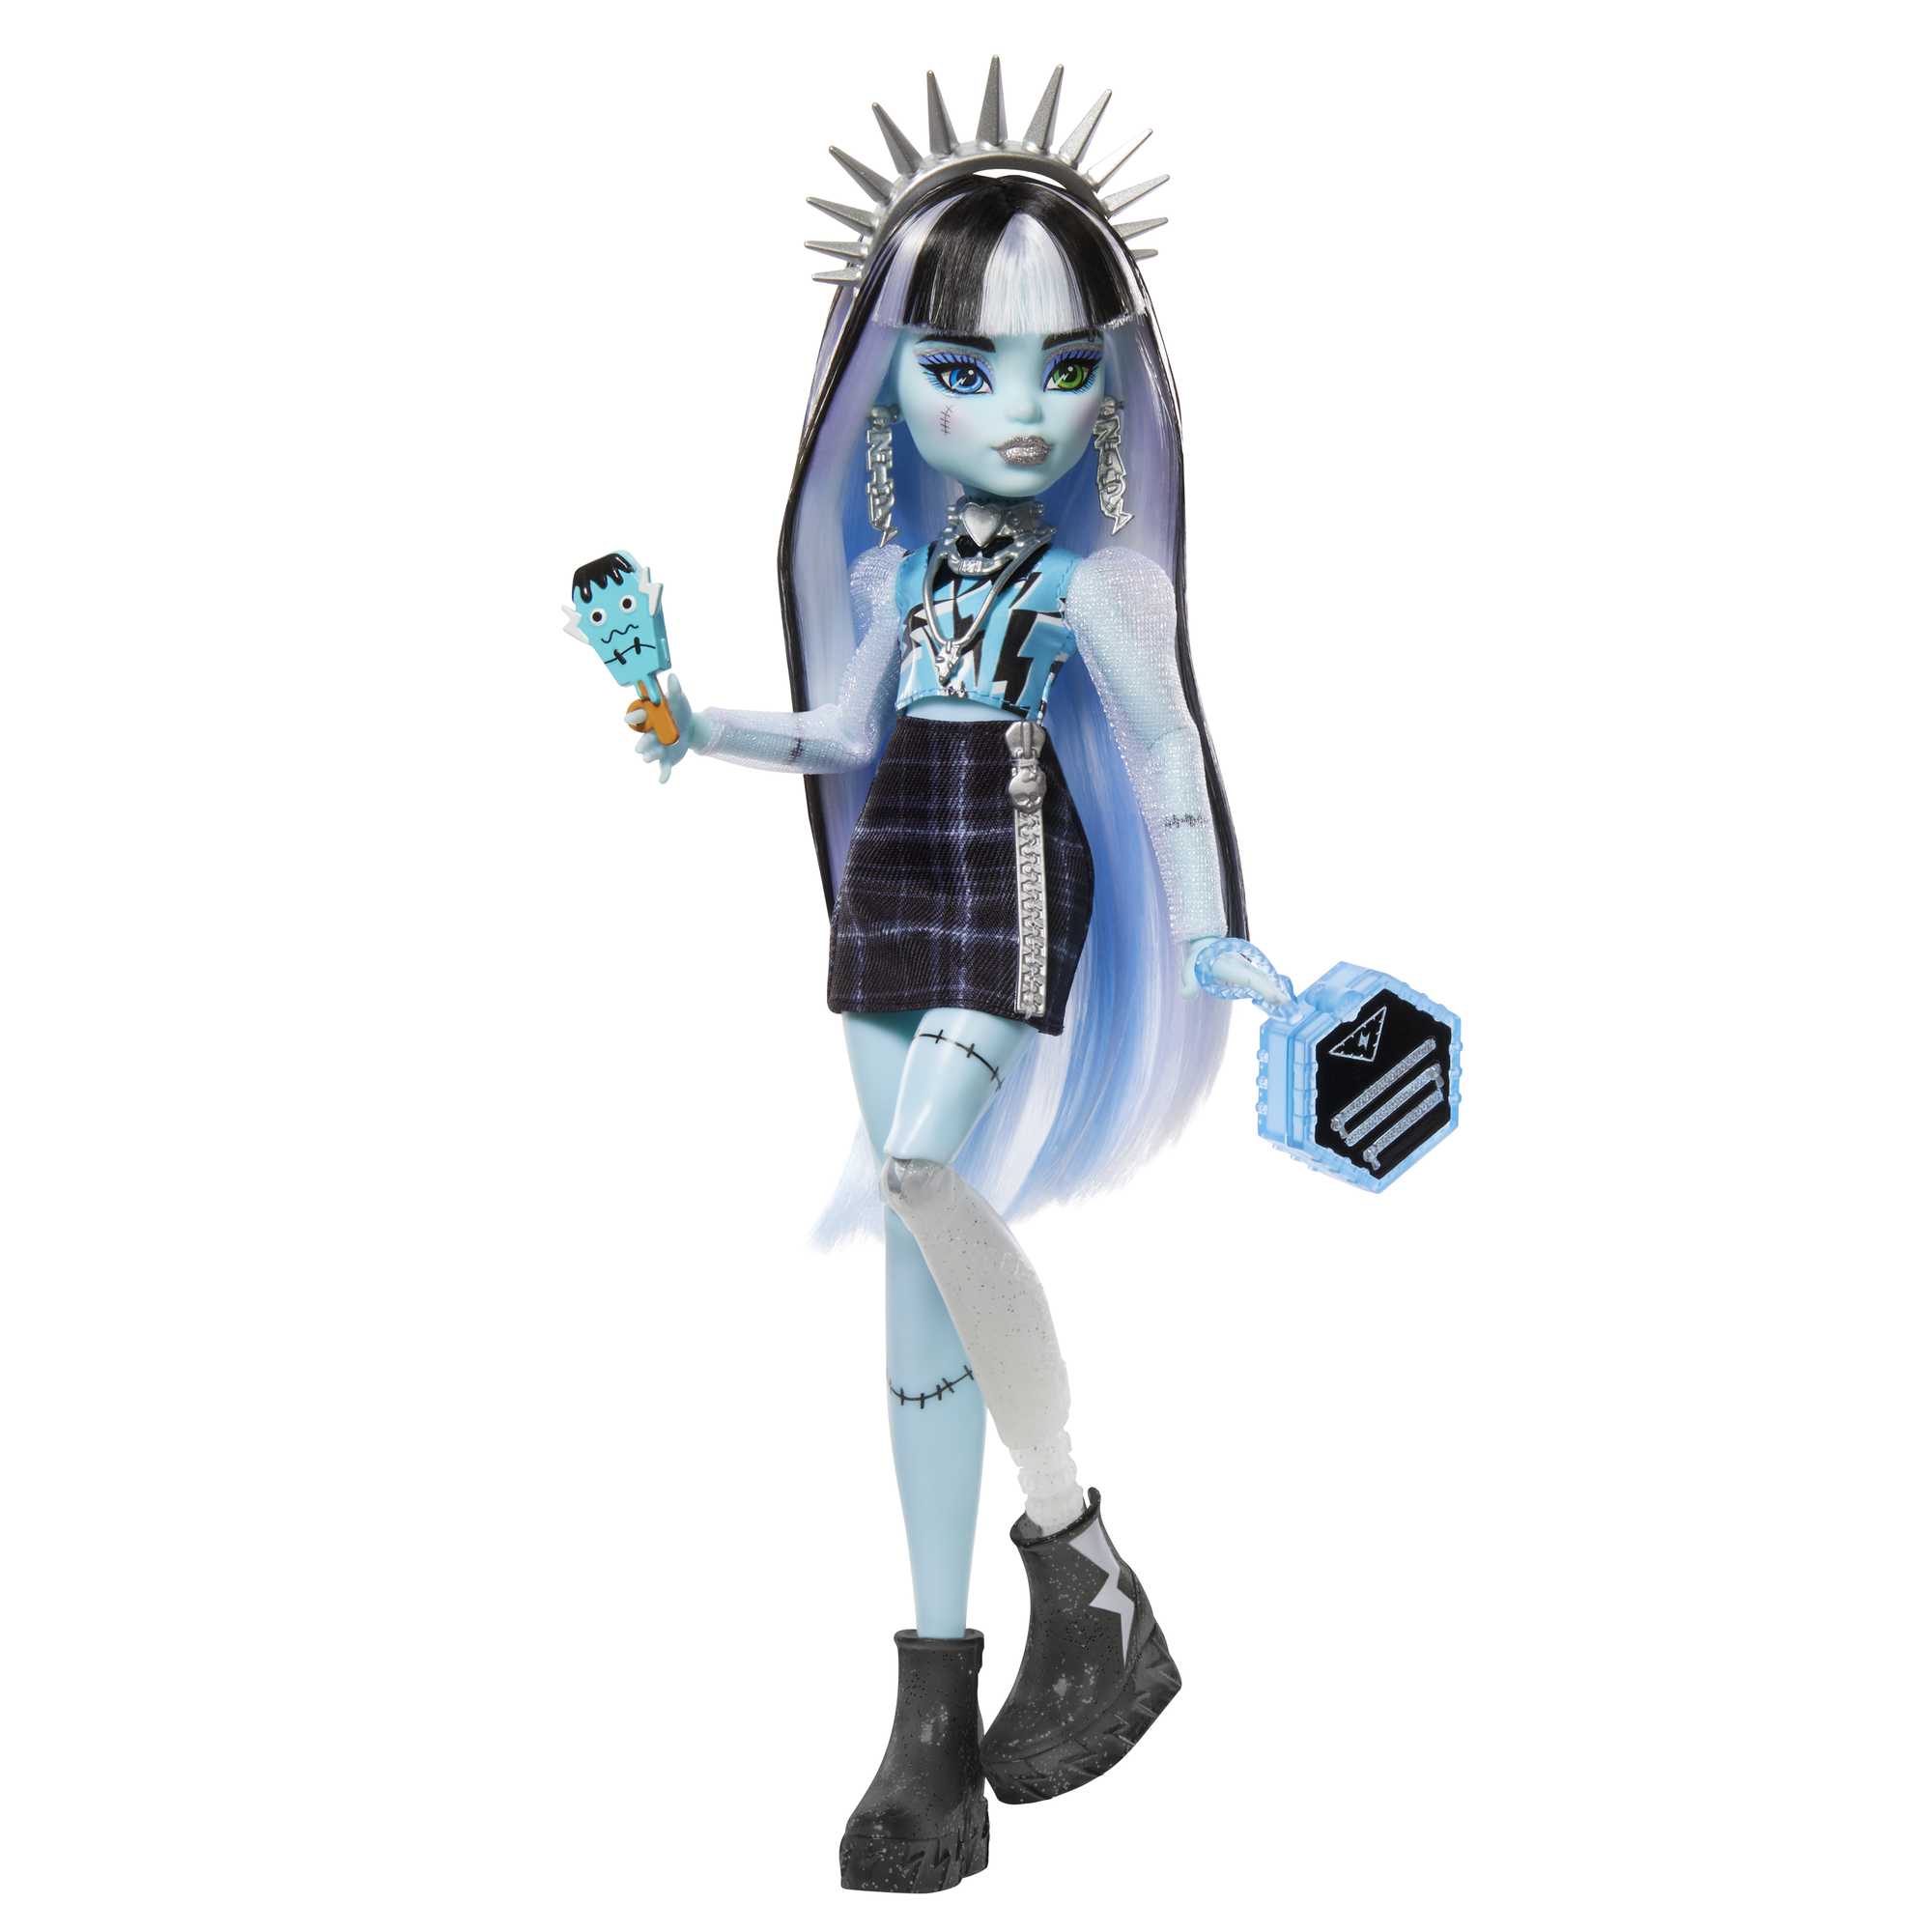 Boneca Mattel Monster High Glows In The Dark - Frankie Stein Dhb57